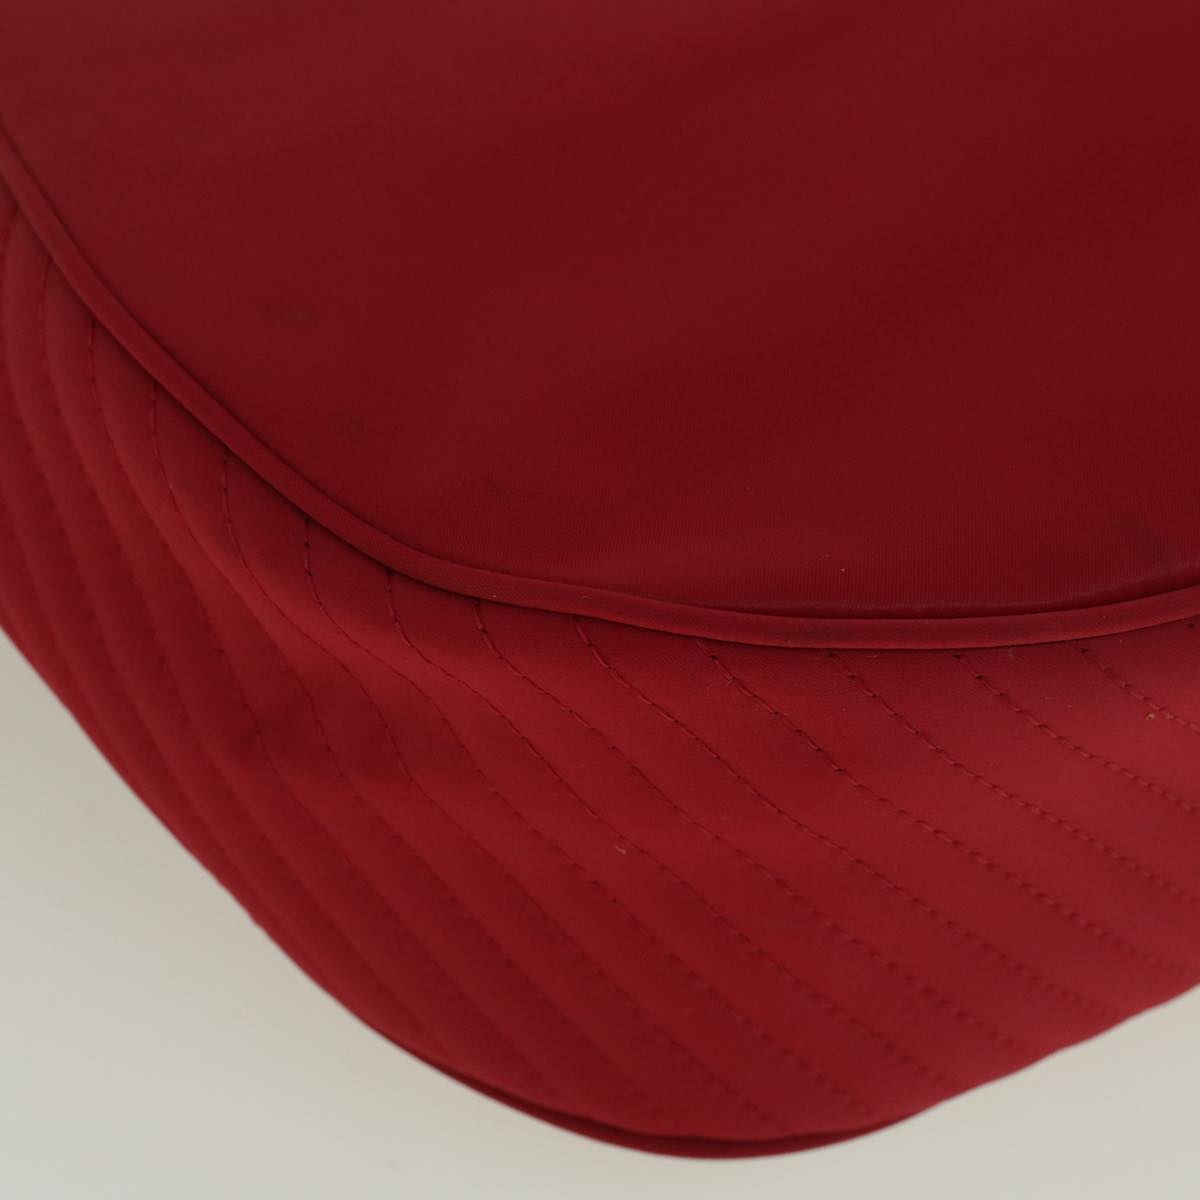 SAINT LAURENT Shoulder Bag Nylon Red Auth bs9359